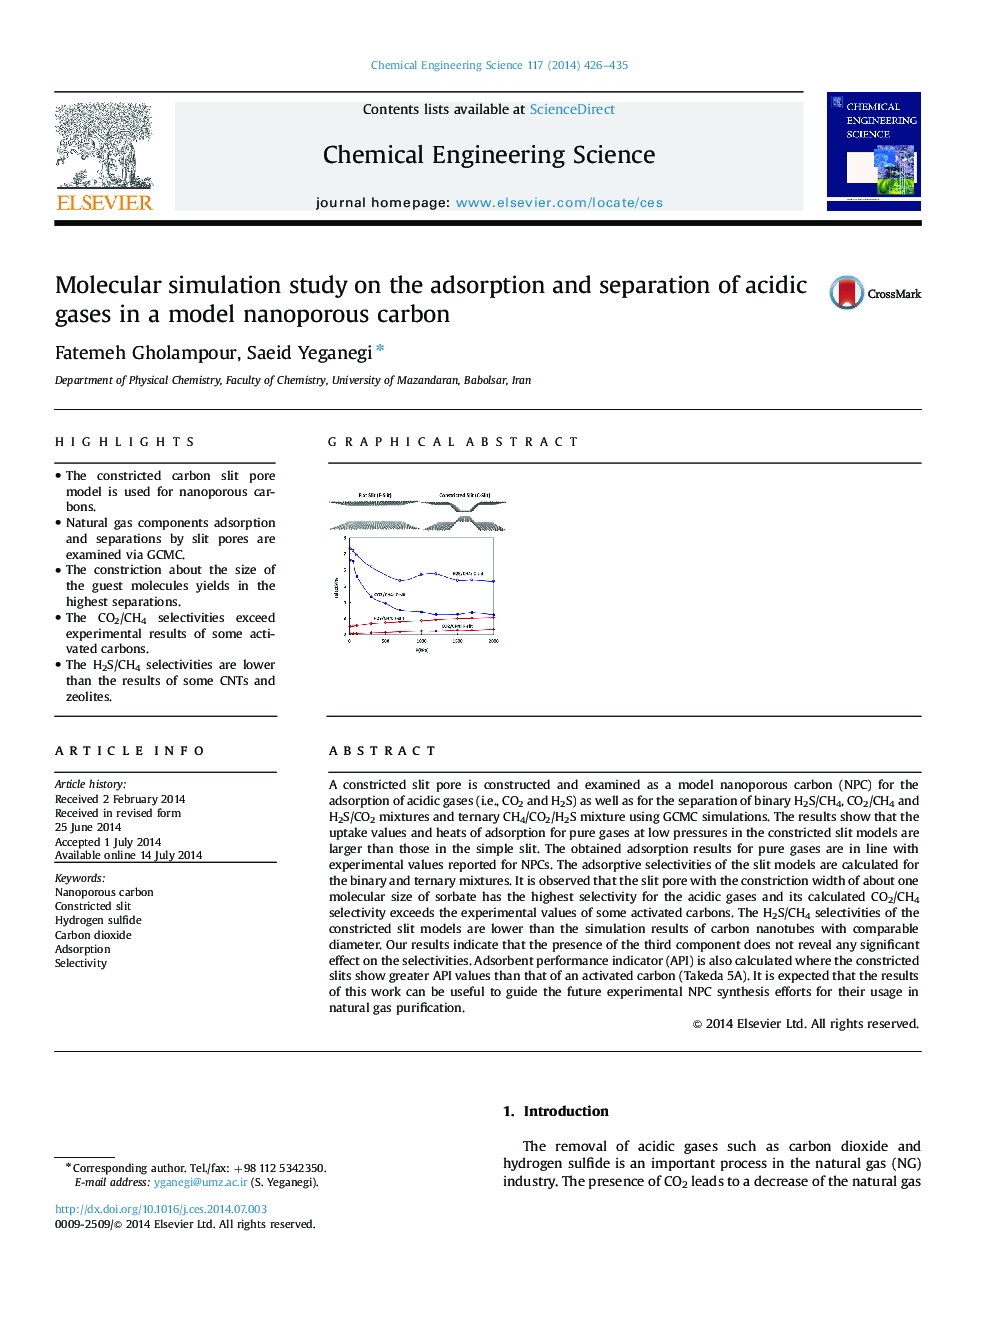 مطالعه شبیه سازی مولکولی بر جذب و جداسازی گازهای اسیدی در یک مدل کربن نانوپور 